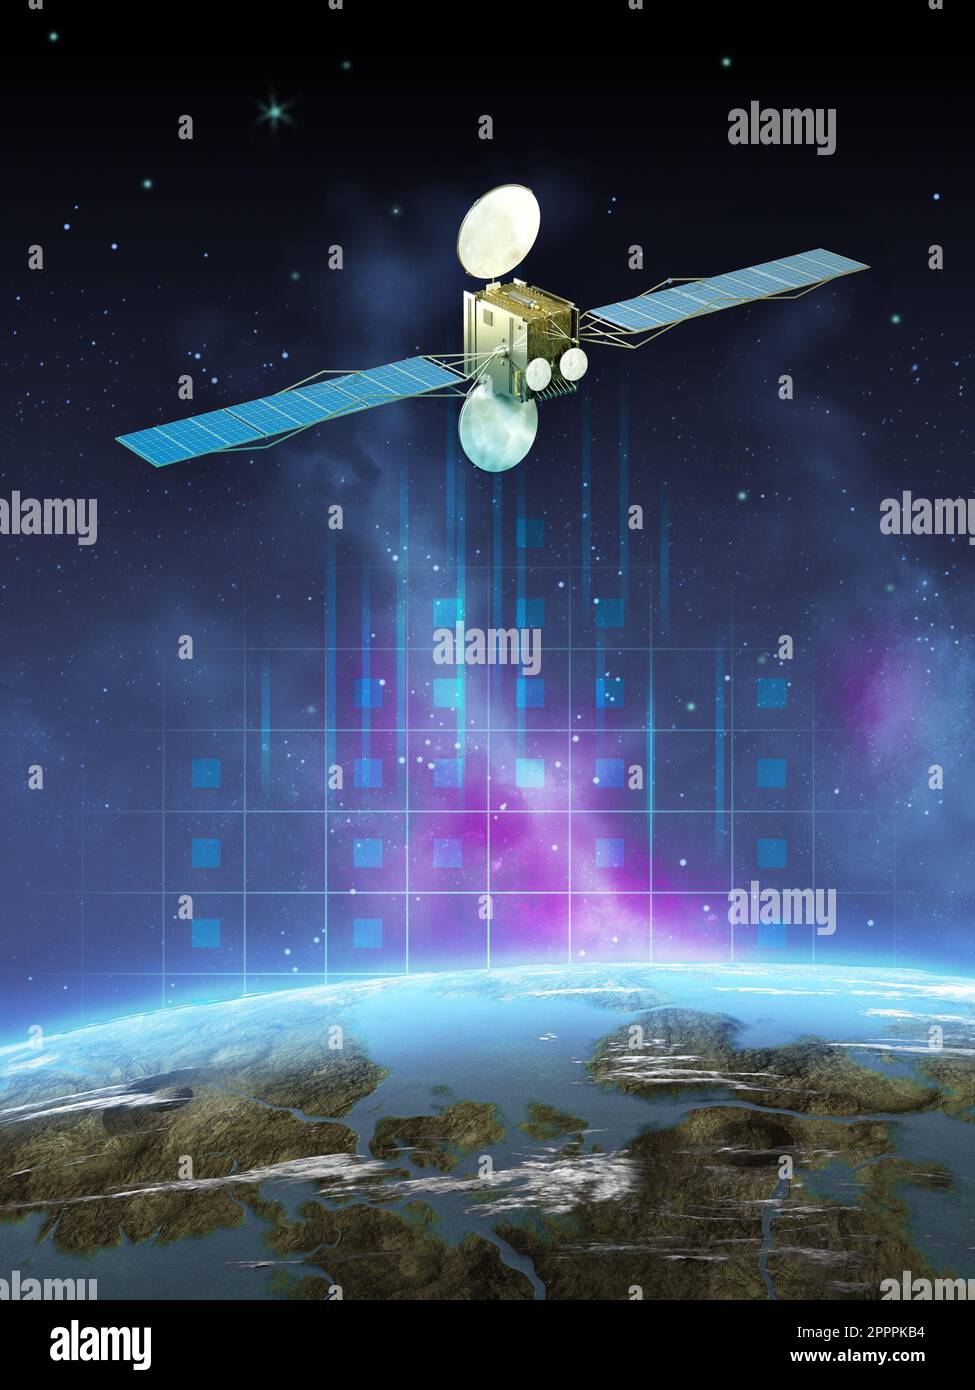 Moderno satellite di comunicazione fluttuante nello spazio, vicino a un pianeta simile alla Terra.Illustrazione digitale, rendering 3D. Foto Stock